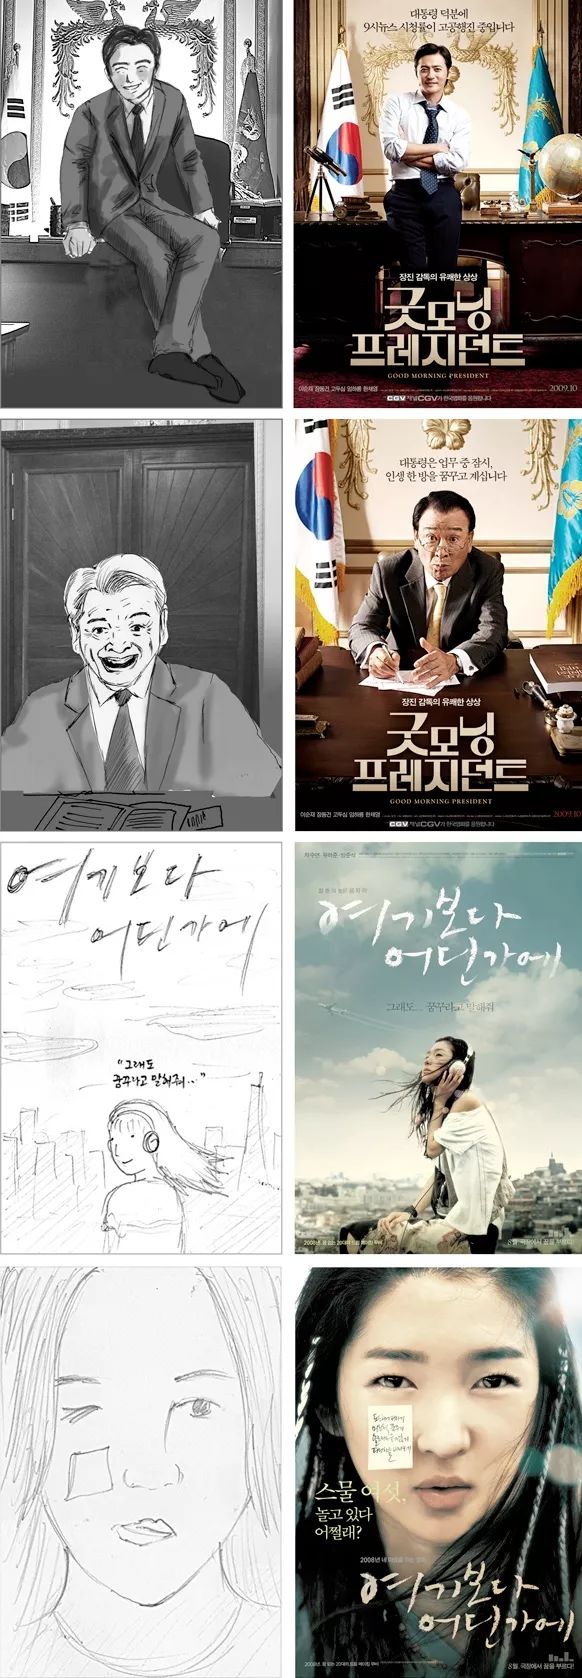 韩国设计工作室PROPAGANDA电影海报设计欣赏